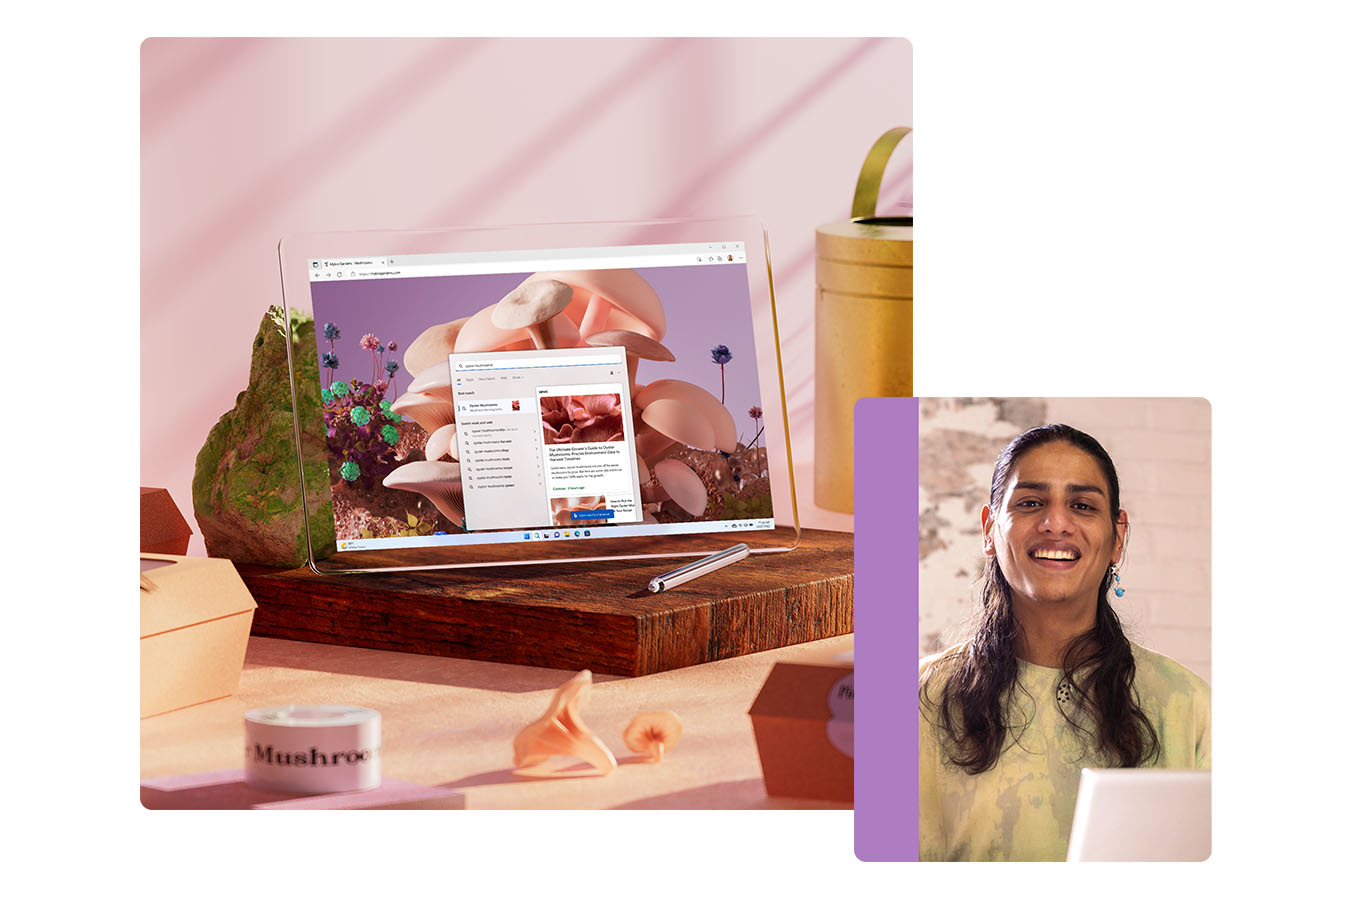 En öppnad dator står på ett träblock och en kvinna ler